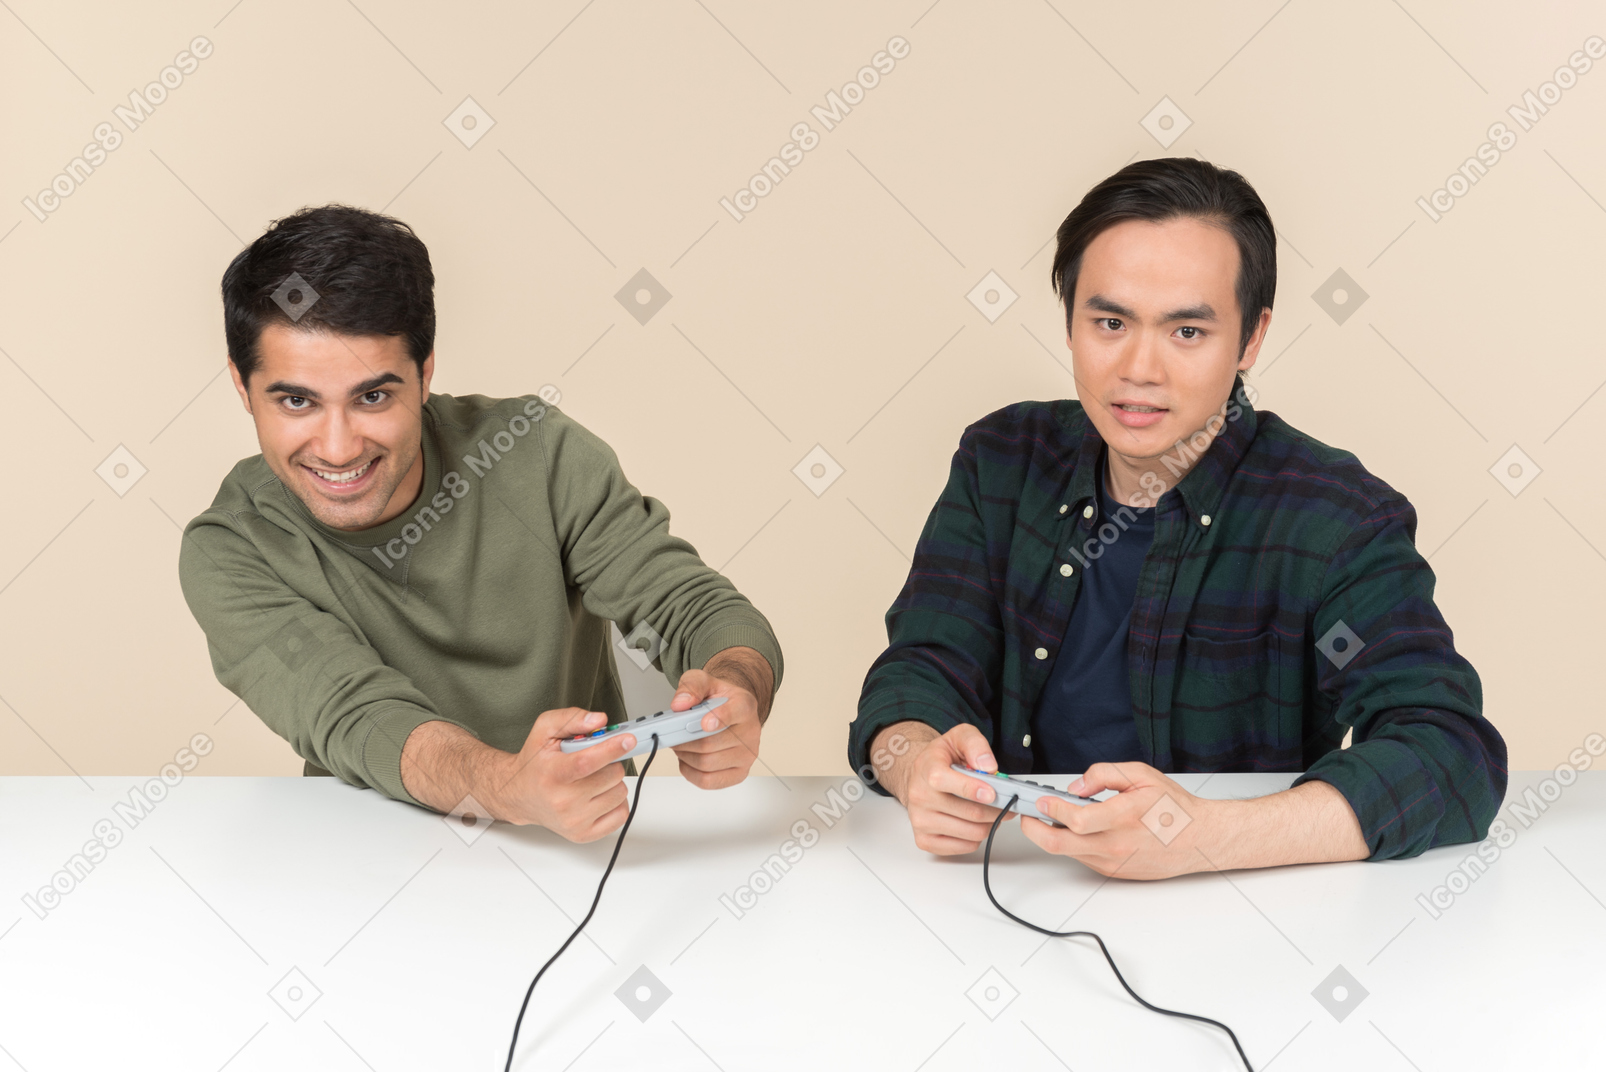 Amigos interraciales jugando videojuegos